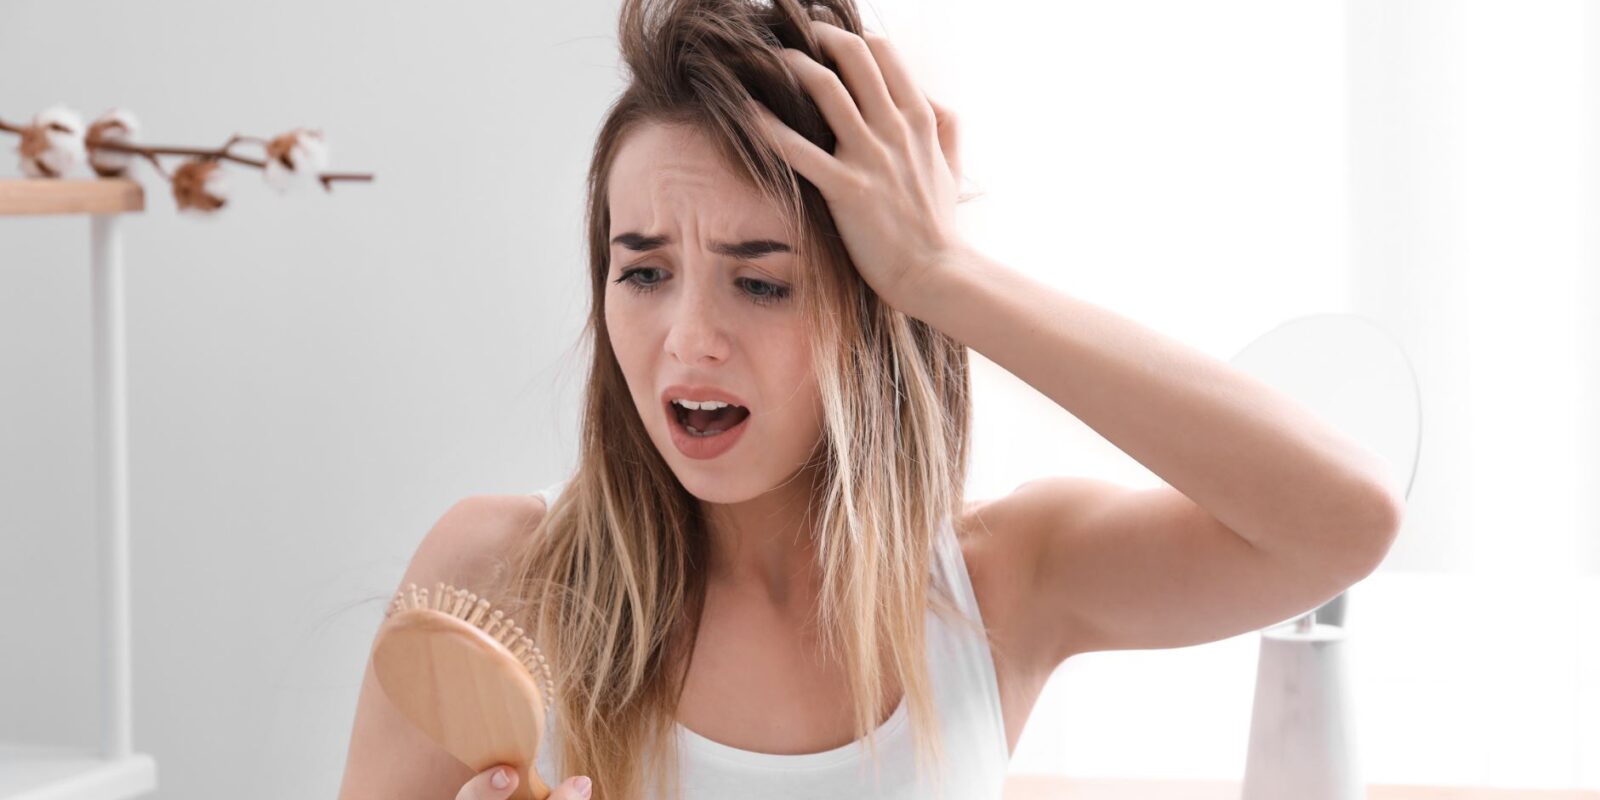 Mittel gegen Haarausfall bei Frauen: Was hilft wirklich bei erblichem und diffusem Haarausfall?